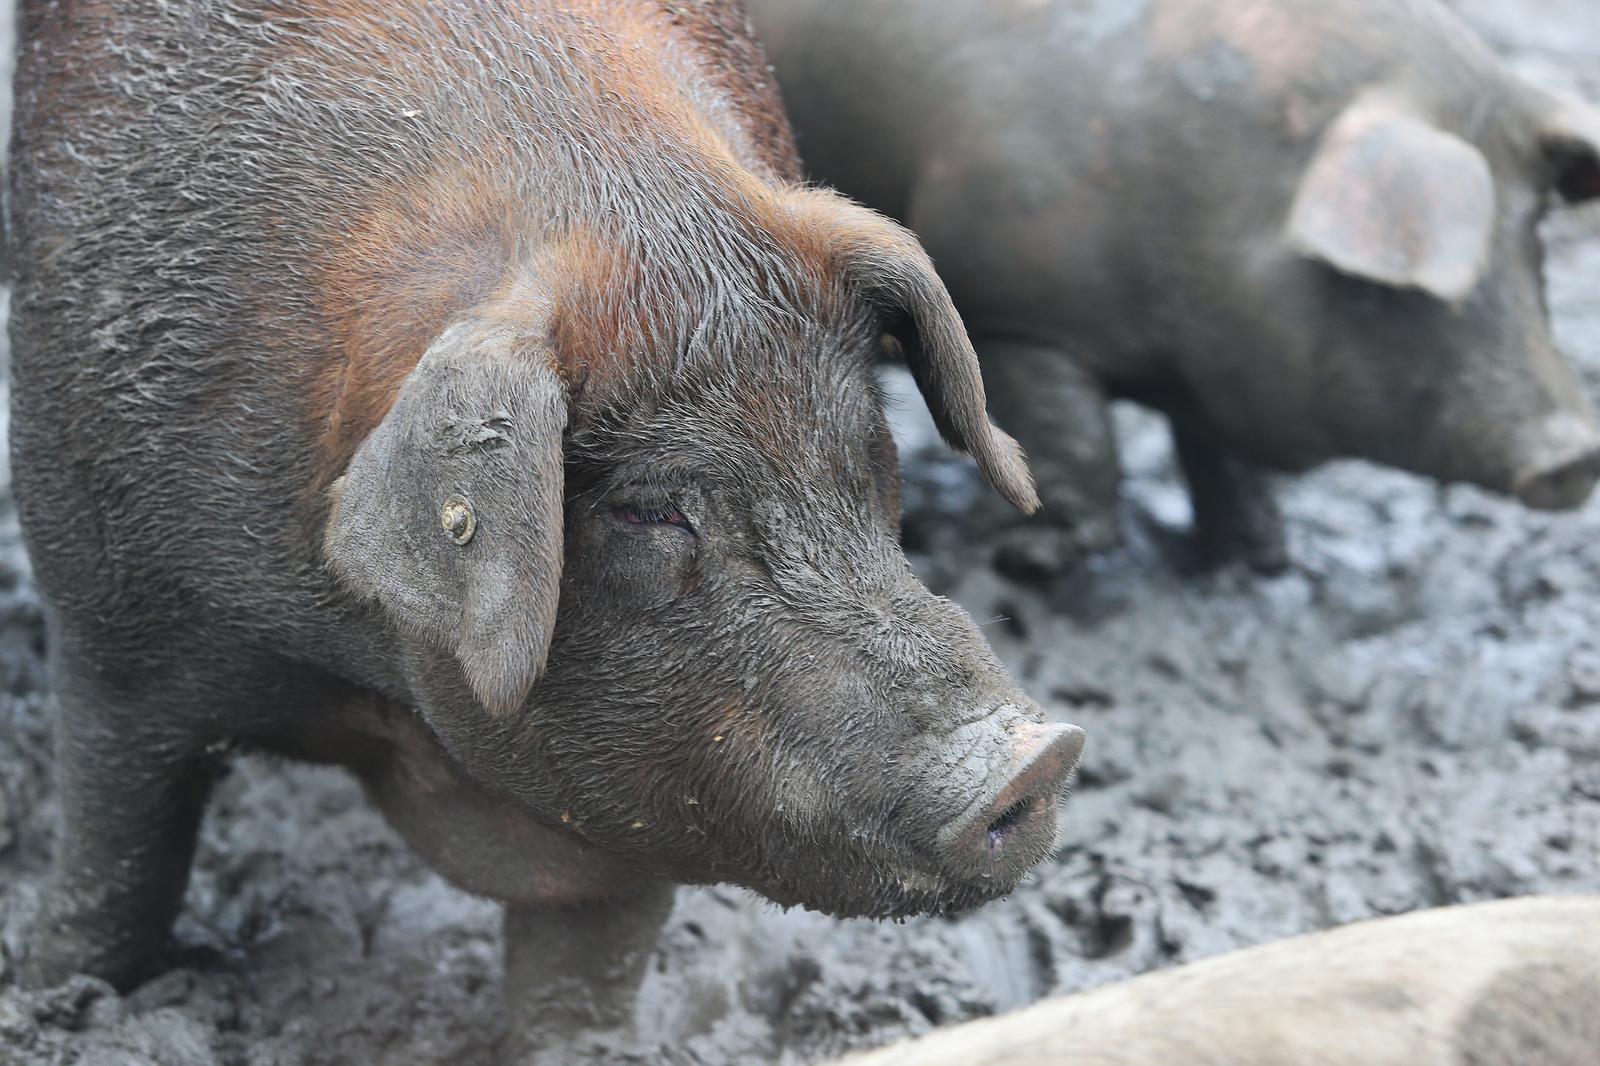 21.10.2016., Otok - Vlado Ferbezar uzgojio je svinju cija se sunka nalazi u izboru za najvecu sunku na svijetu. Sada uzgaja svinju koja ce teziti i do 500 kilograma i cija ce sunka biti jos veca. "nPhoto: Davor Javorovic/PIXSELL